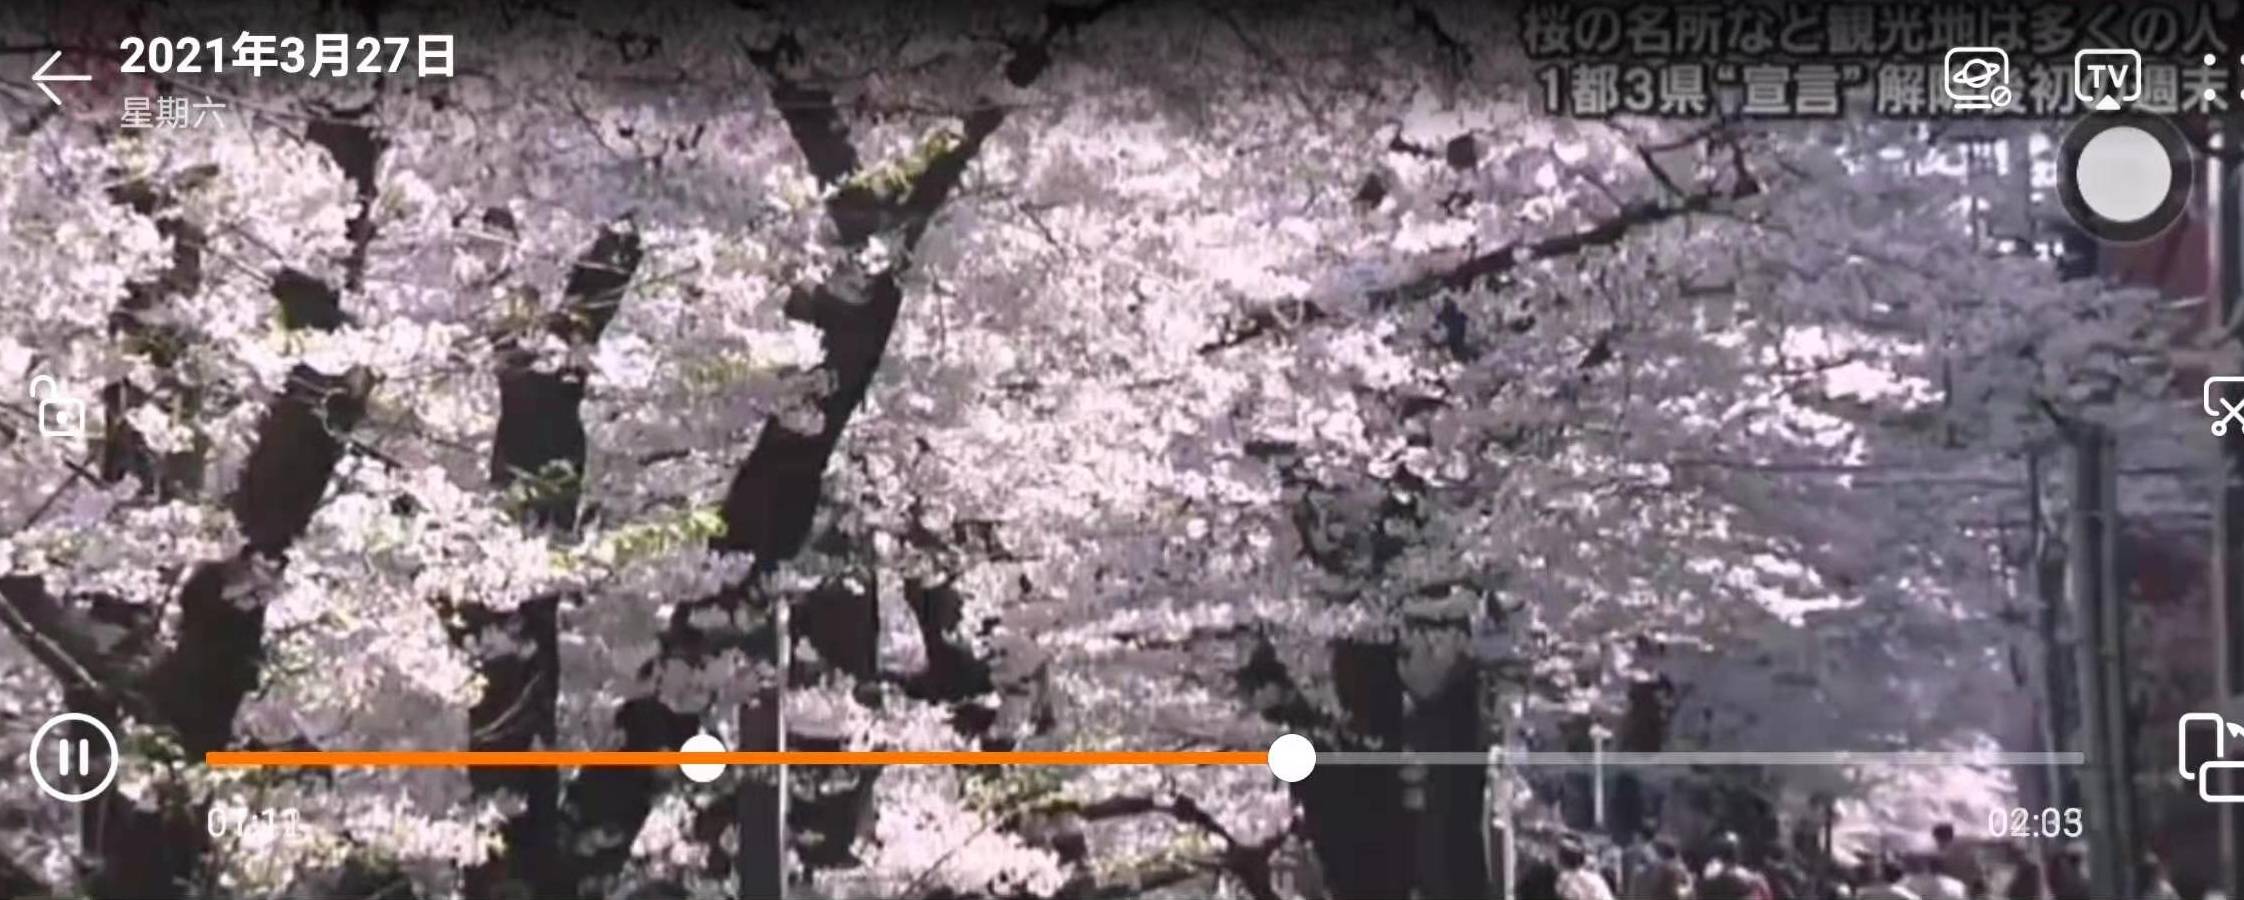 日本东京樱花正值盛开时节,周末著名赏樱地点聚集了赏樱的民众